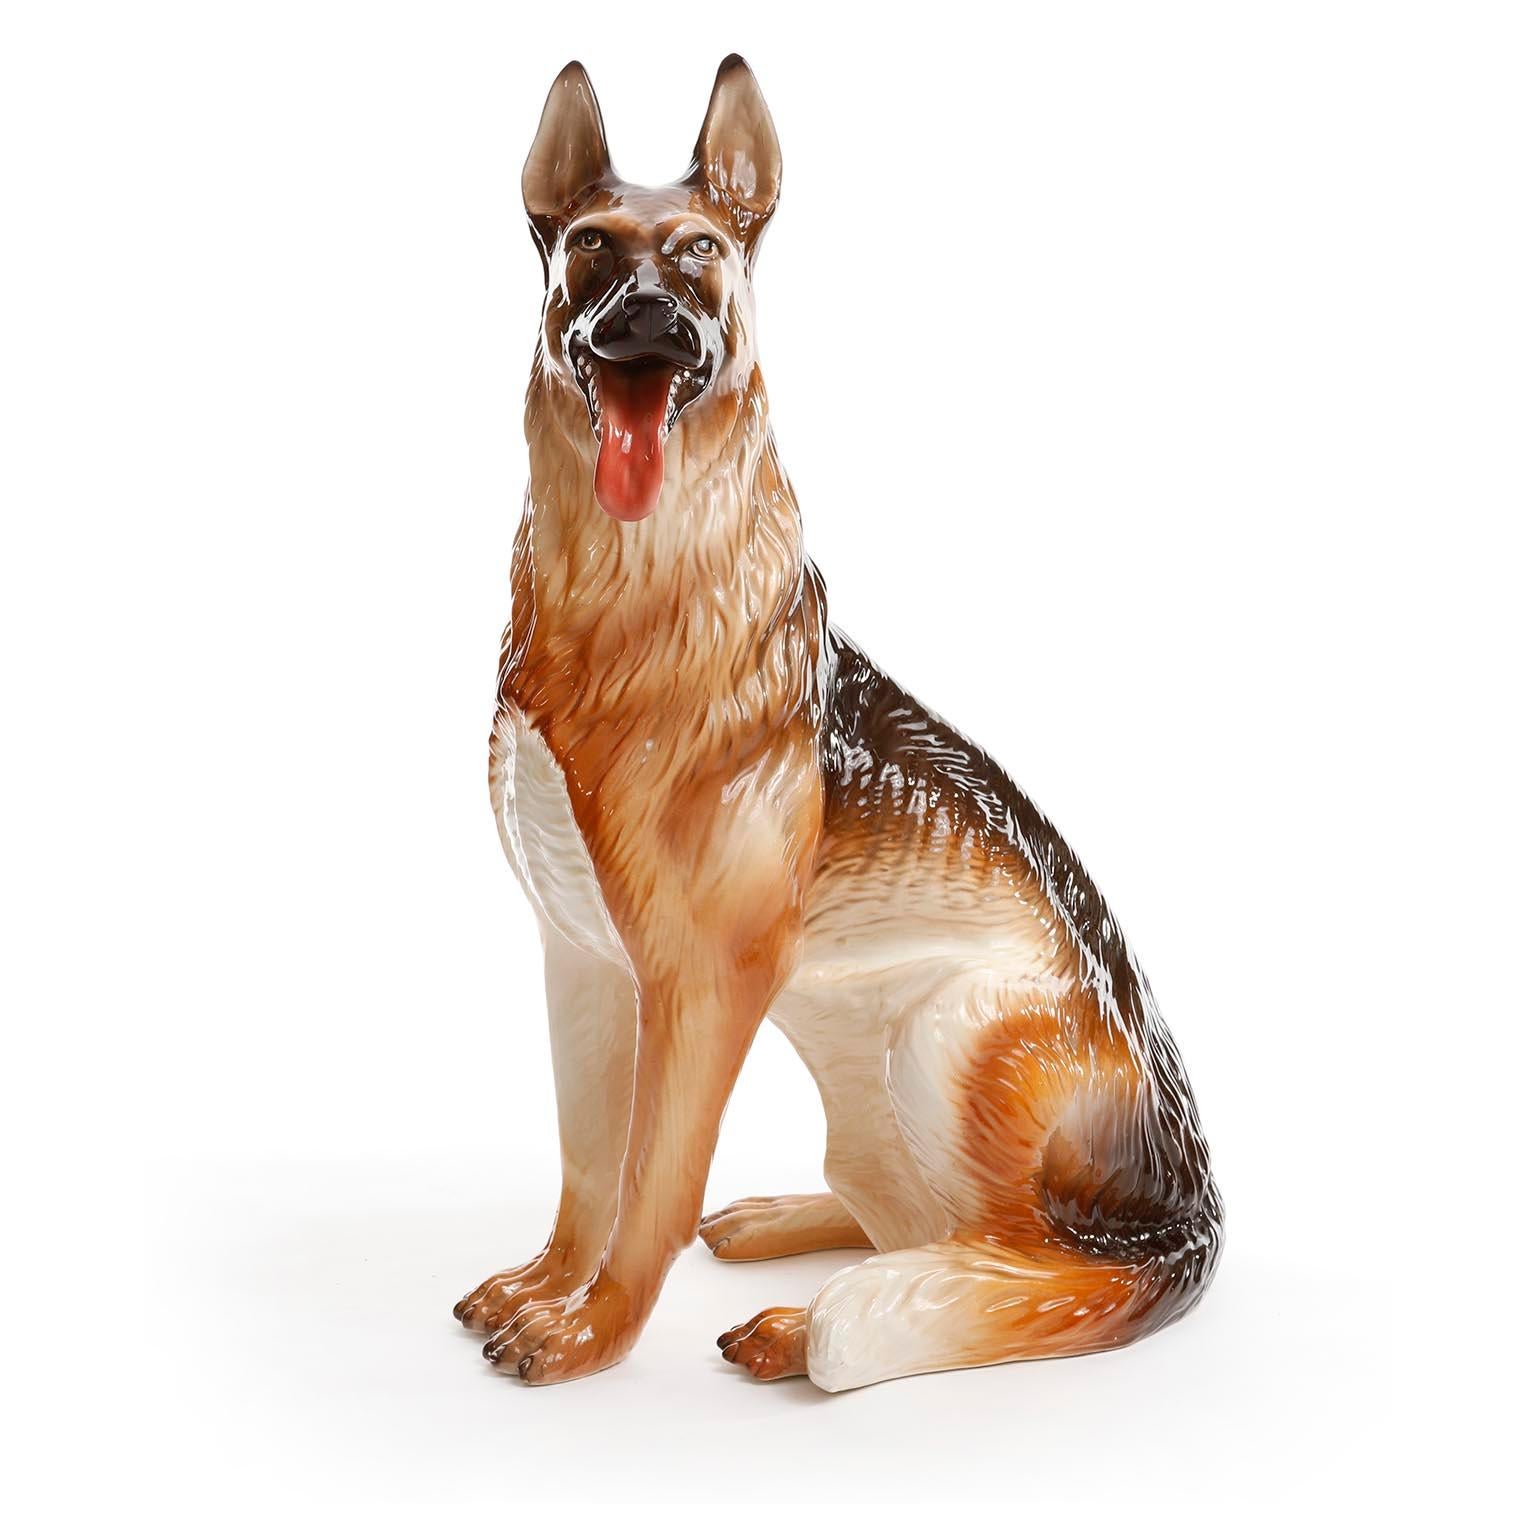 Sculpture en céramique peinte et émaillée représentant un chien de berger allemand (Schäferhund) grandeur nature, fabriquée en Italie vers 1960 (fin des années 1950 ou début des années 1960).
Une pièce magnifique avec de superbes détails.
Les zones